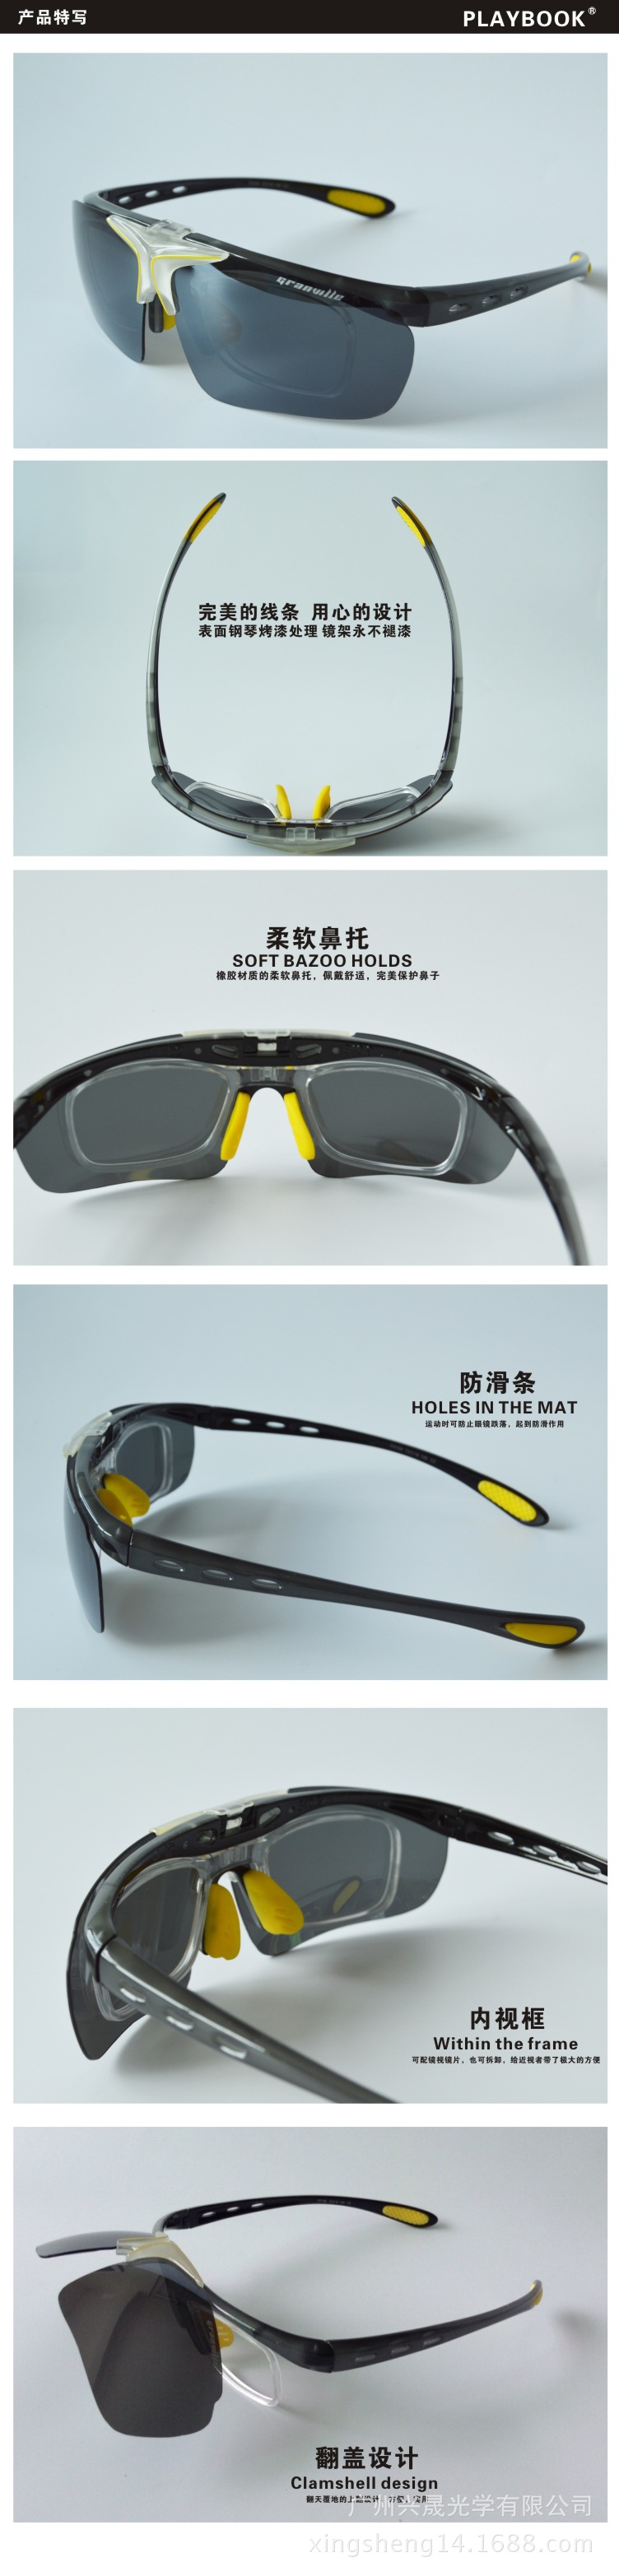 翻盖骑行眼镜 户外偏光运动眼镜 自行车骑行镜 防风防紫外线眼镜示例图6